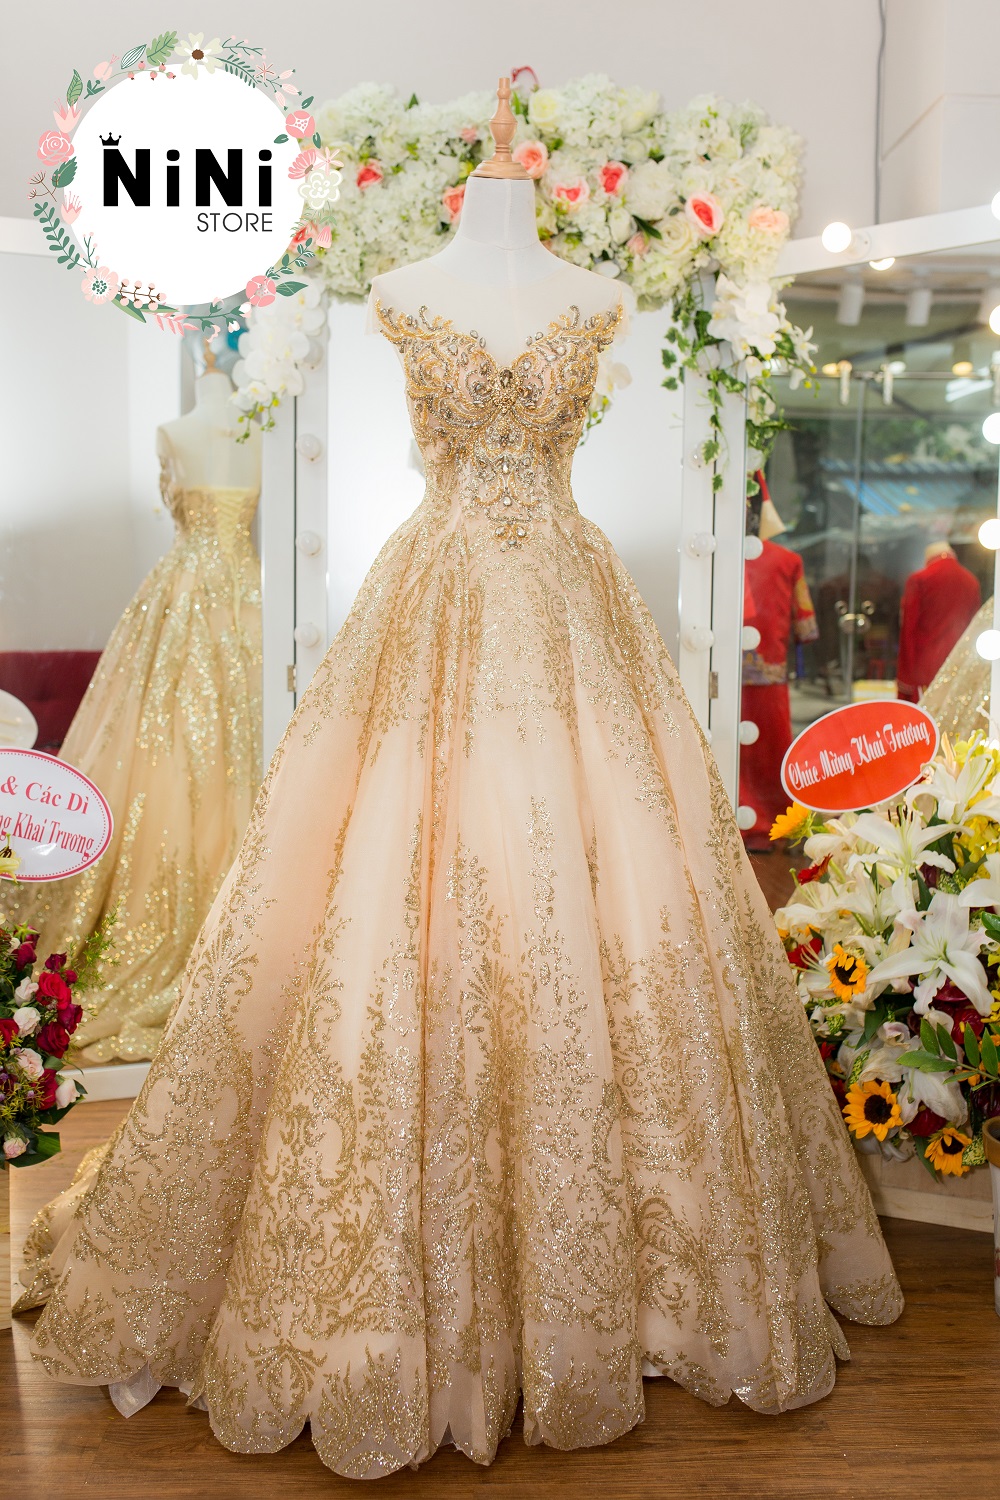 Calla Bridal - Những mẫu váy cưới ngắn đặc trưng của Calla chắc chắn sẽ là  “Hot trend” trong mùa cưới năm nay dành cho tất cả các cô dâu yêu cái